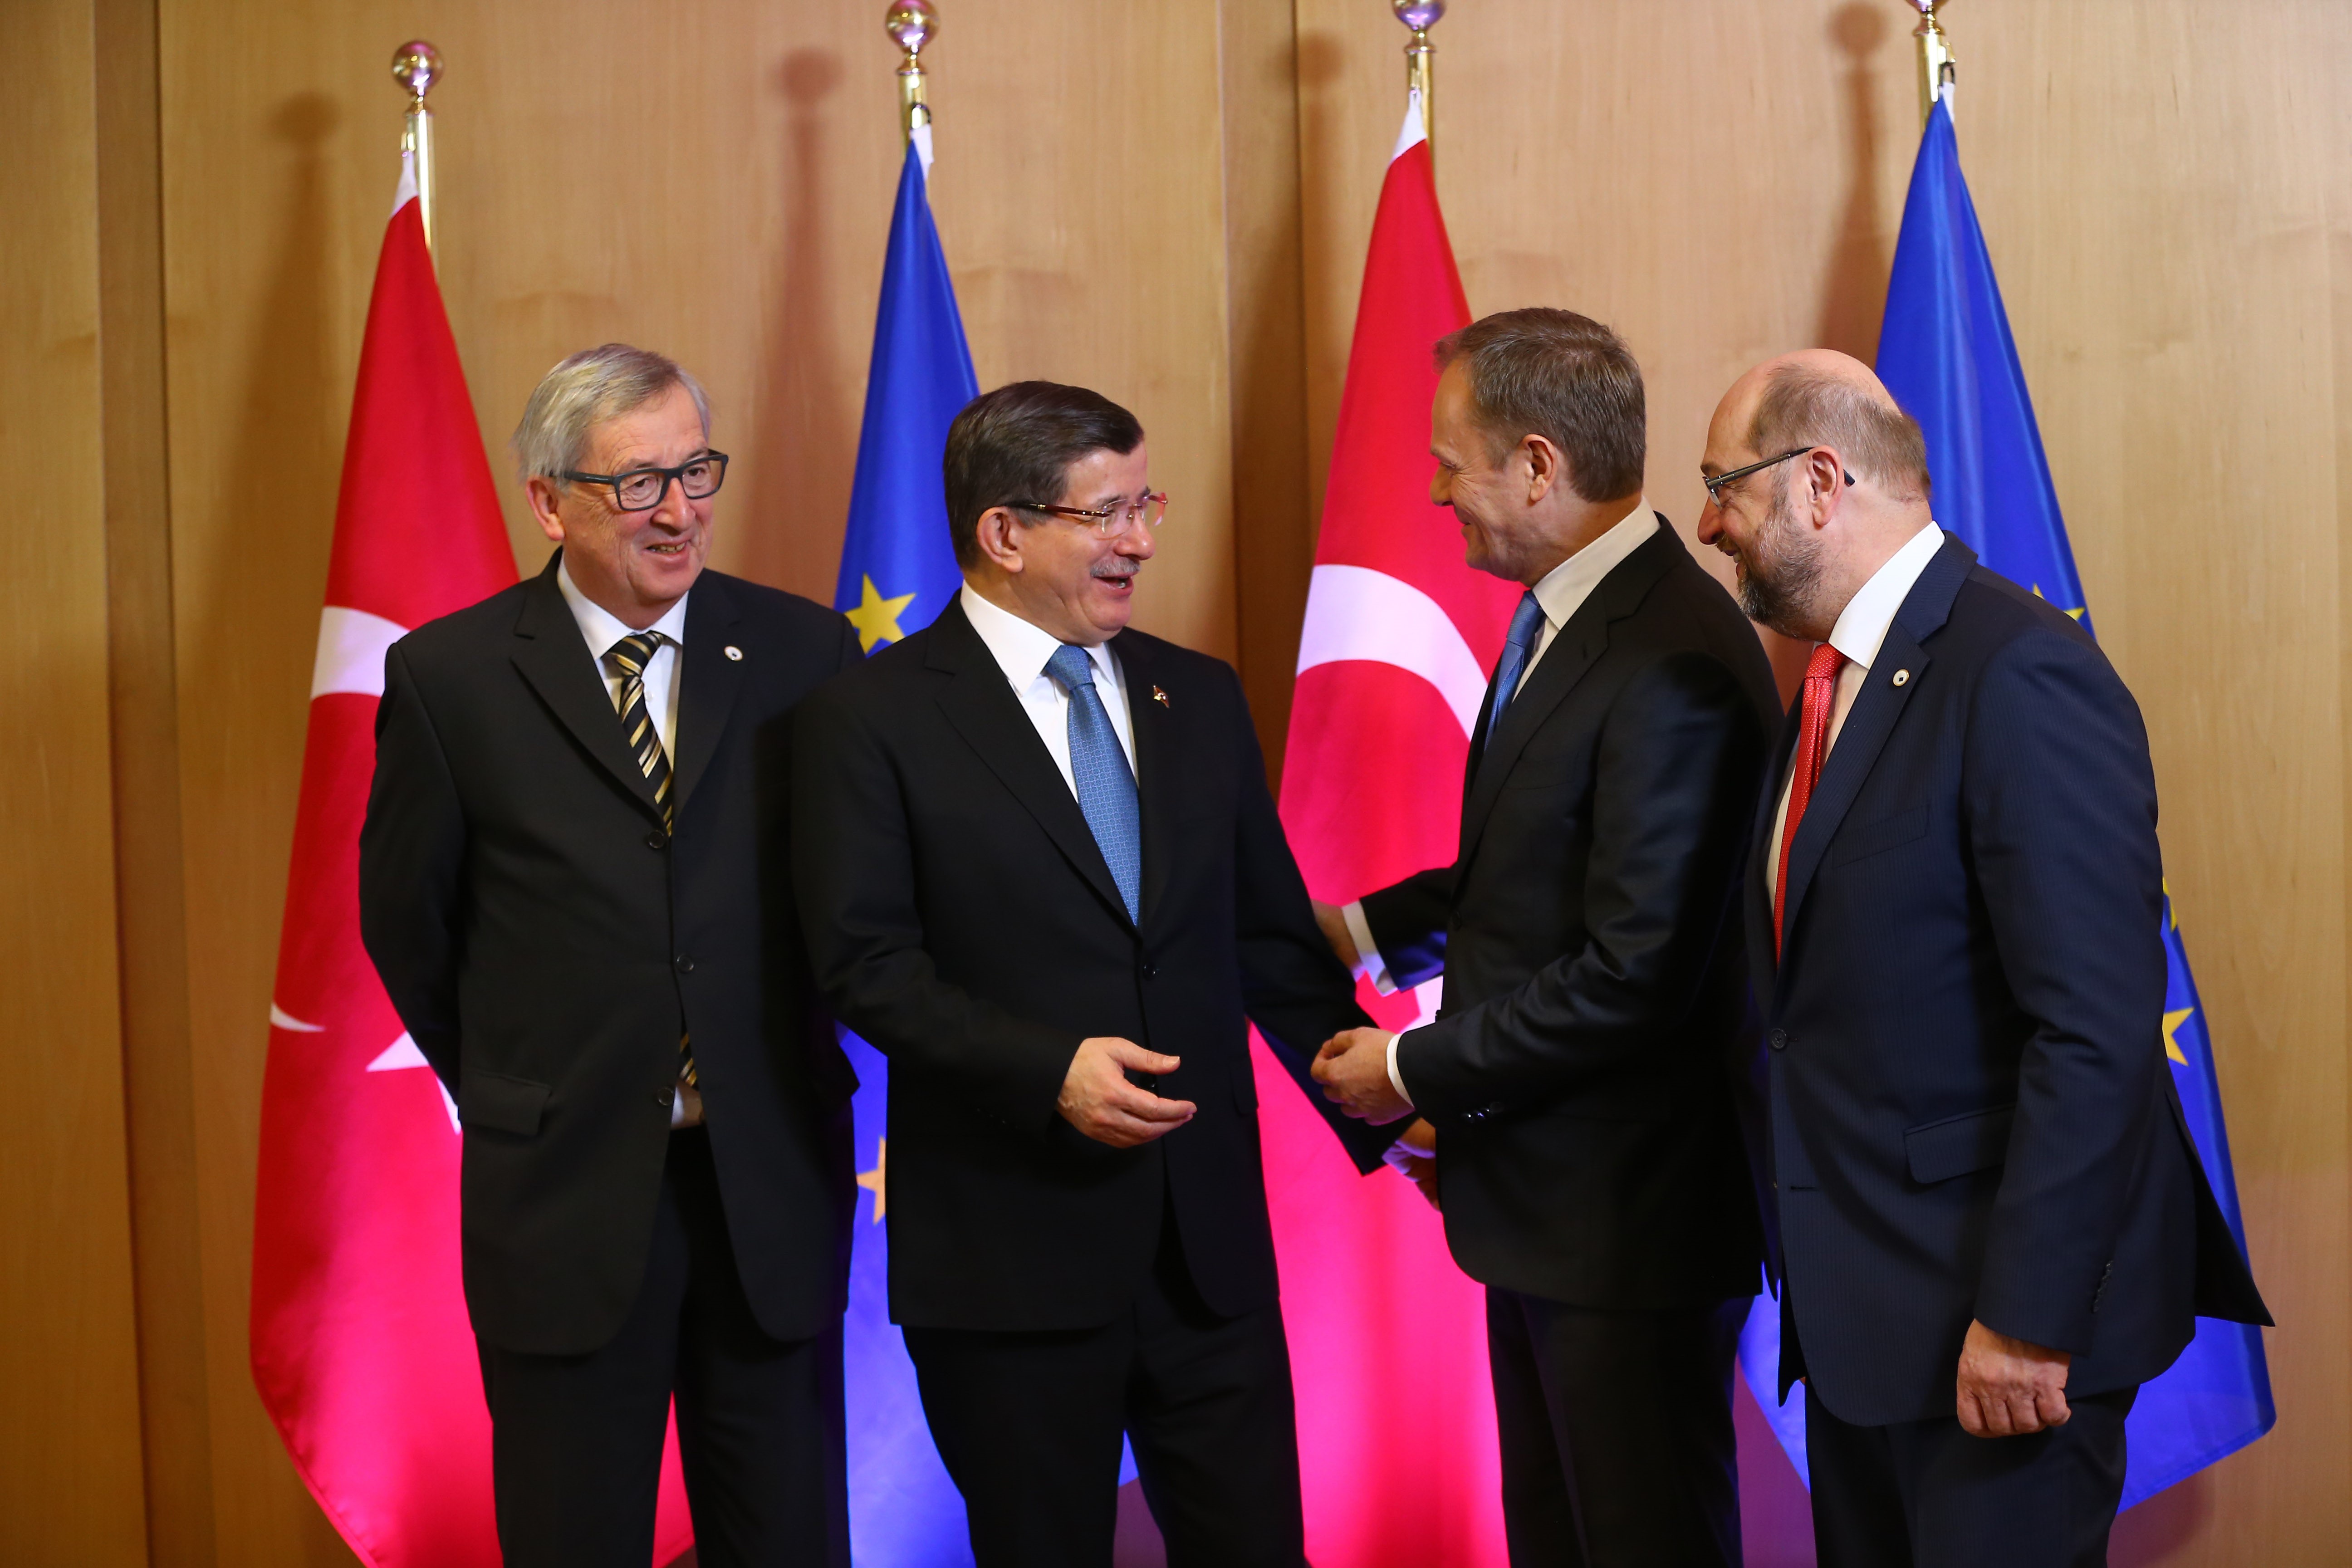 Balról: Jean-Claude Juncker bizottsági elnök, Ahmet Davutoglu török miniszterelnök, Donald Tusk  , az Európai Tanács elnöke és Martin Schulz, az Európai Parlament elnöke. Fotó: AFP/ Hakan Goktepe / Anadolu Agency.